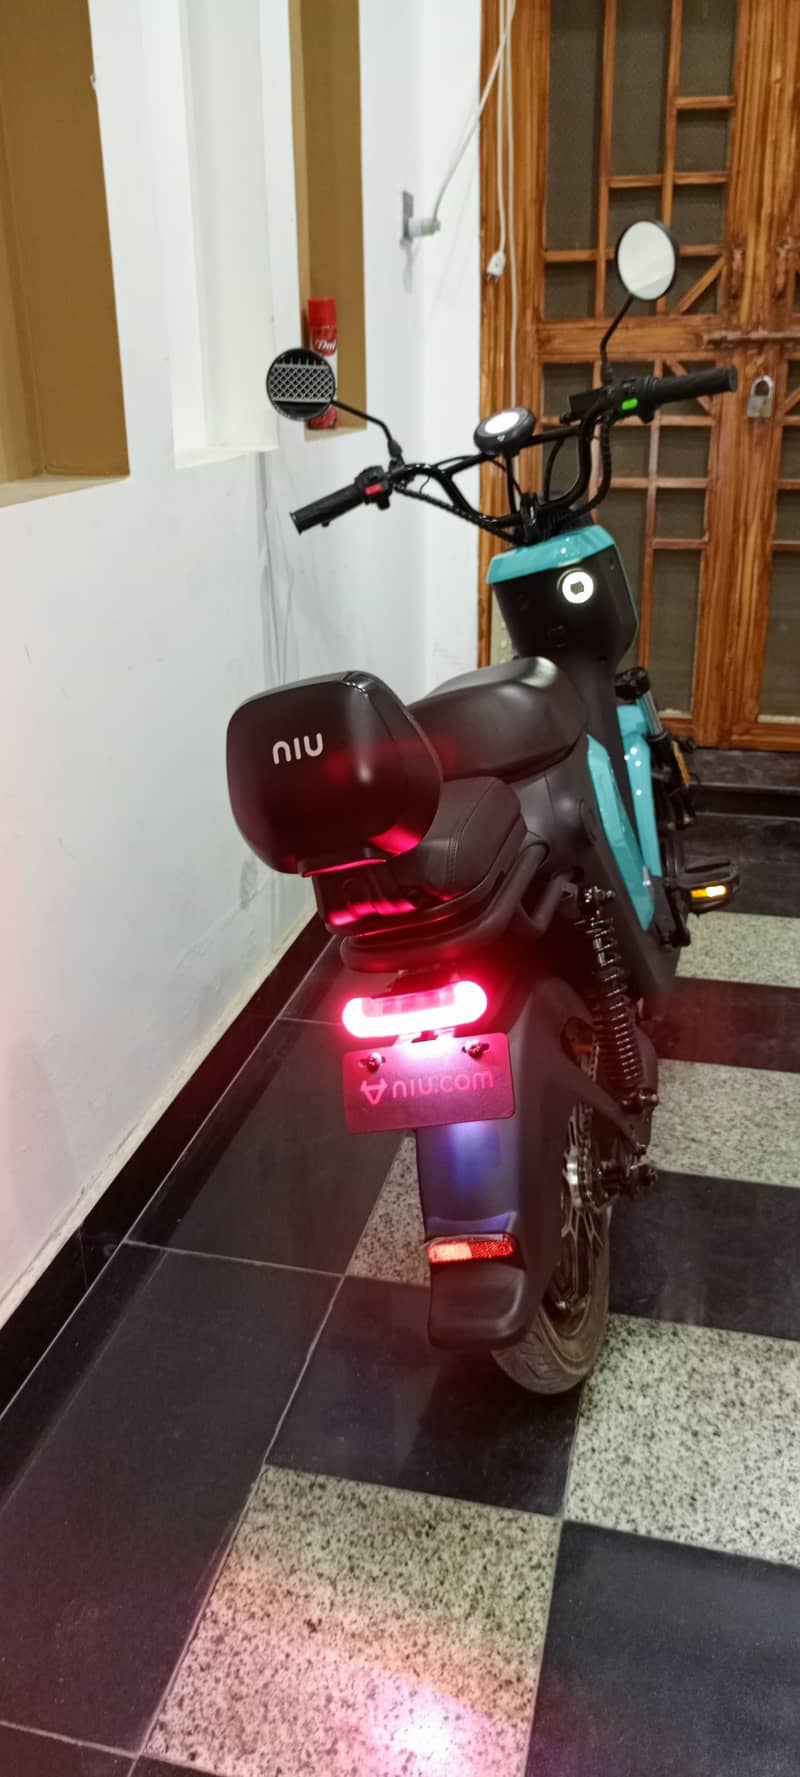 NIU Electric bike + bicycle 2